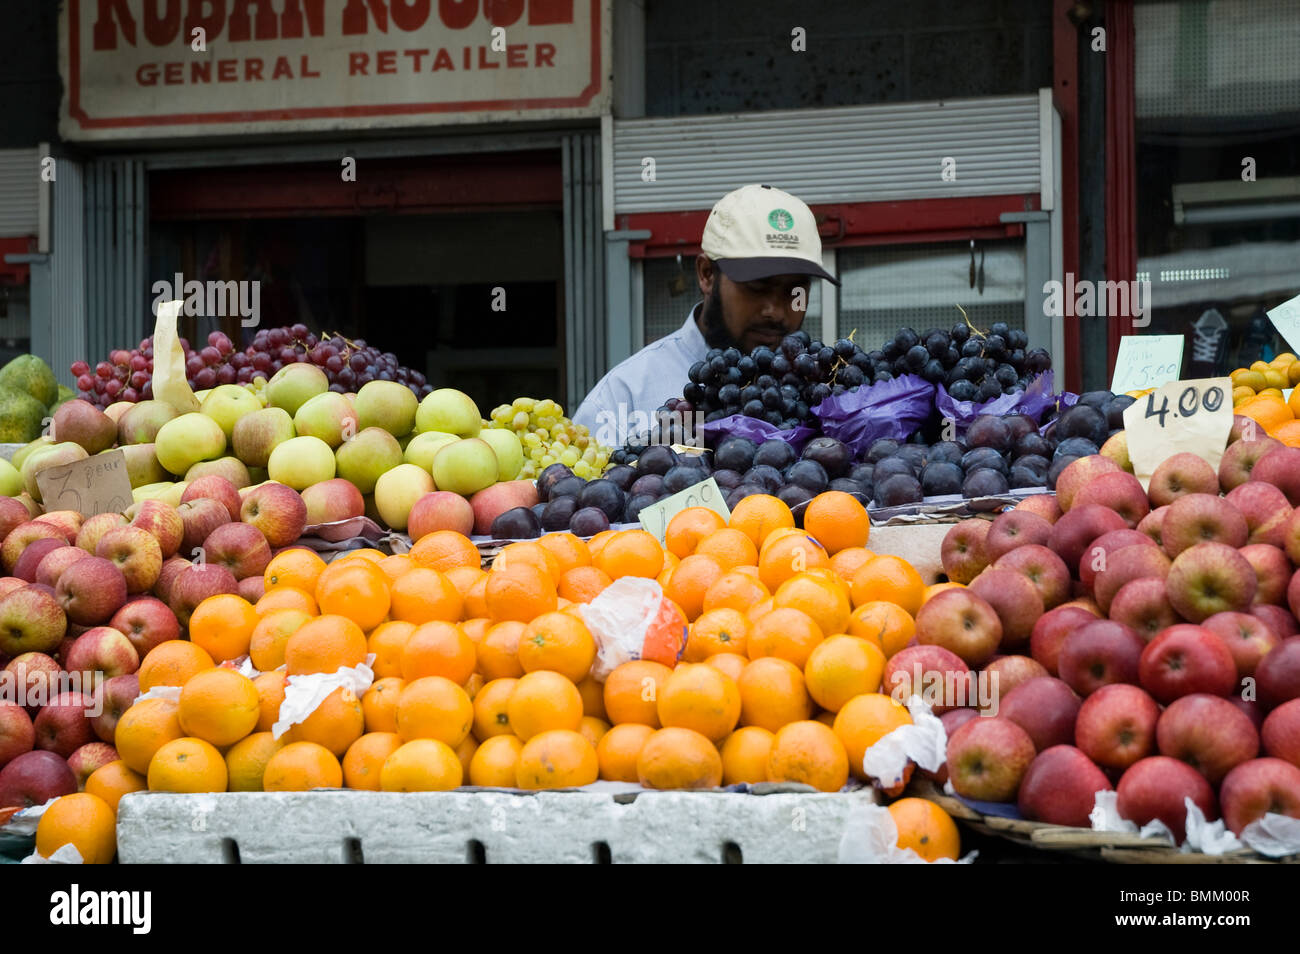 Mauritius, Port Louis. Fruit vendor Stock Photo